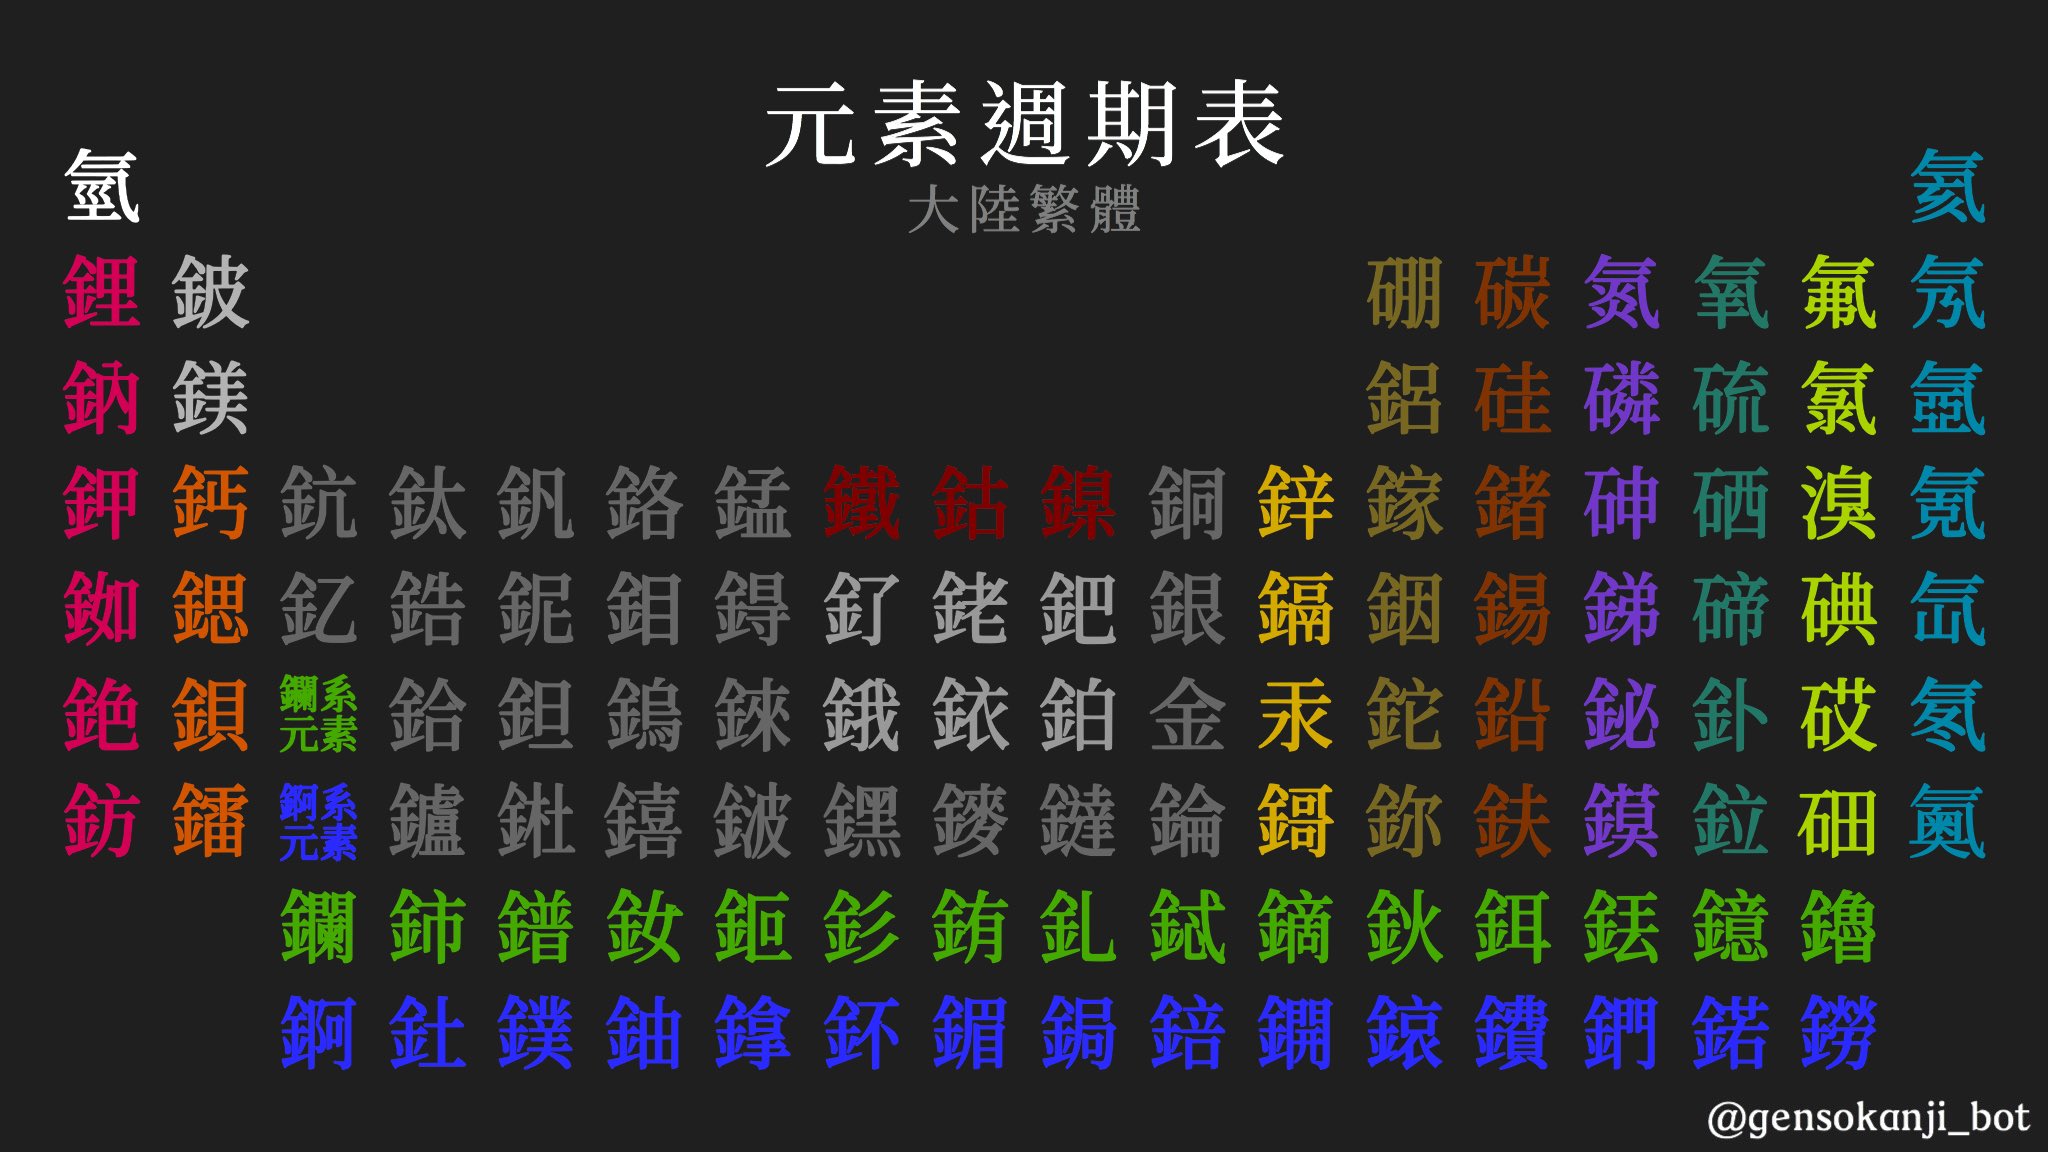 元素の漢字bot 漢字の元素周期表 当botのメインである元素の漢字の周期表 中国では元素それぞれに対して1文字の漢字が当てられていて 部首が金属非金属と常温での三態を 残りが音を表している この世の元素すべてを漢字ひとつで表せることにロマン